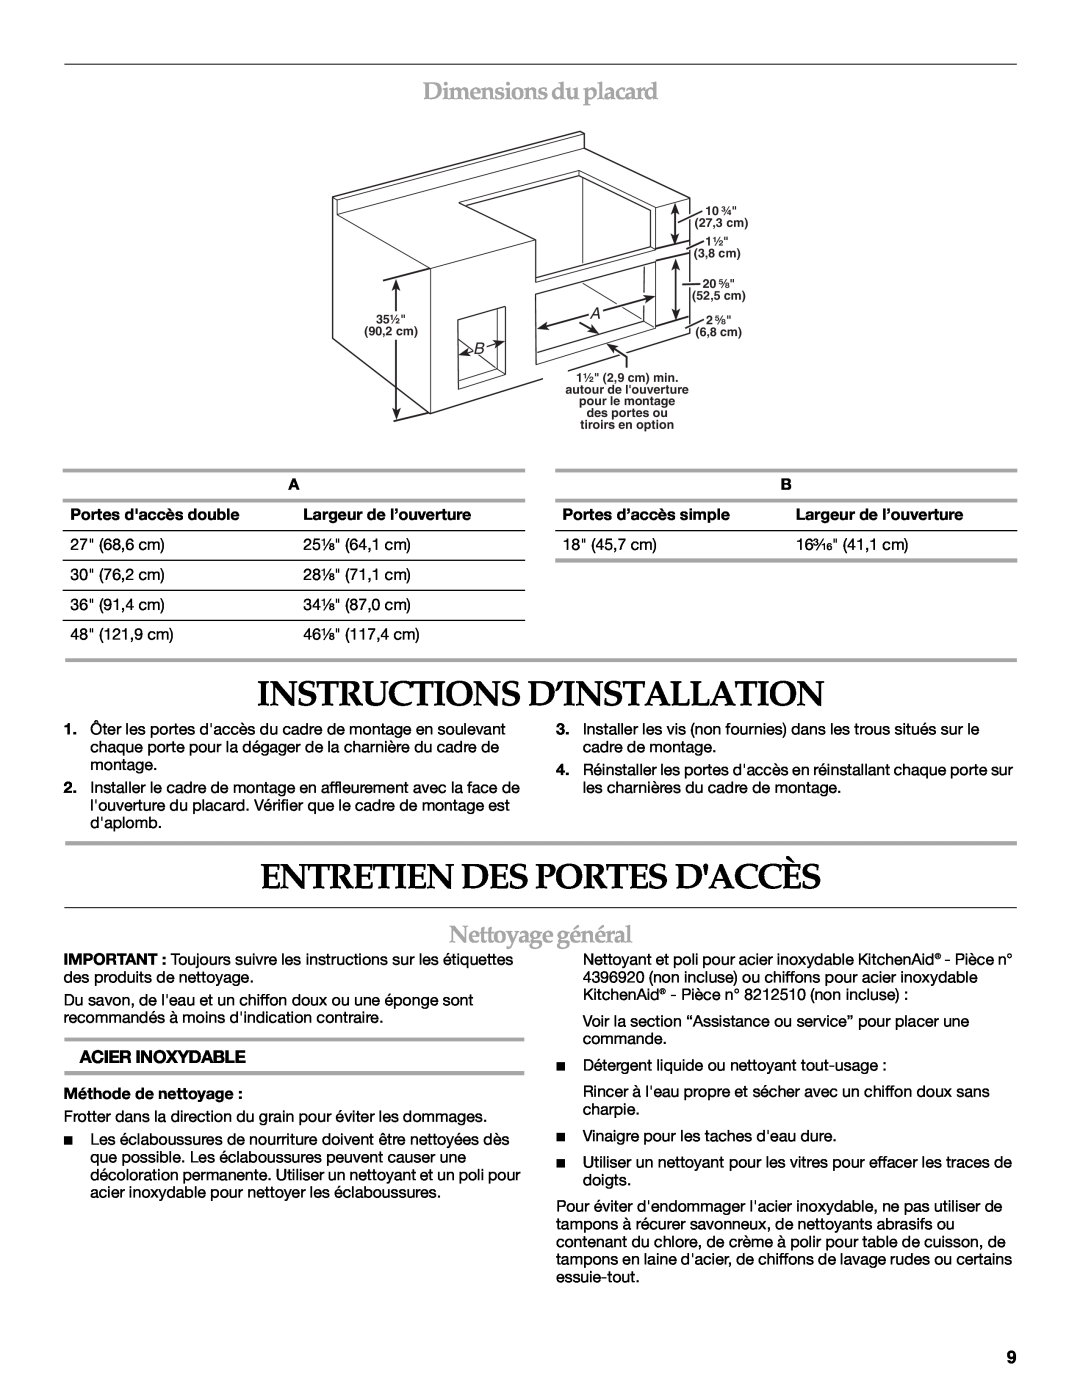 KitchenAid KBAU482T Instructions D’Installation, Entretien Des Portes Daccès, Dimensions duplacard, Nettoyage général 